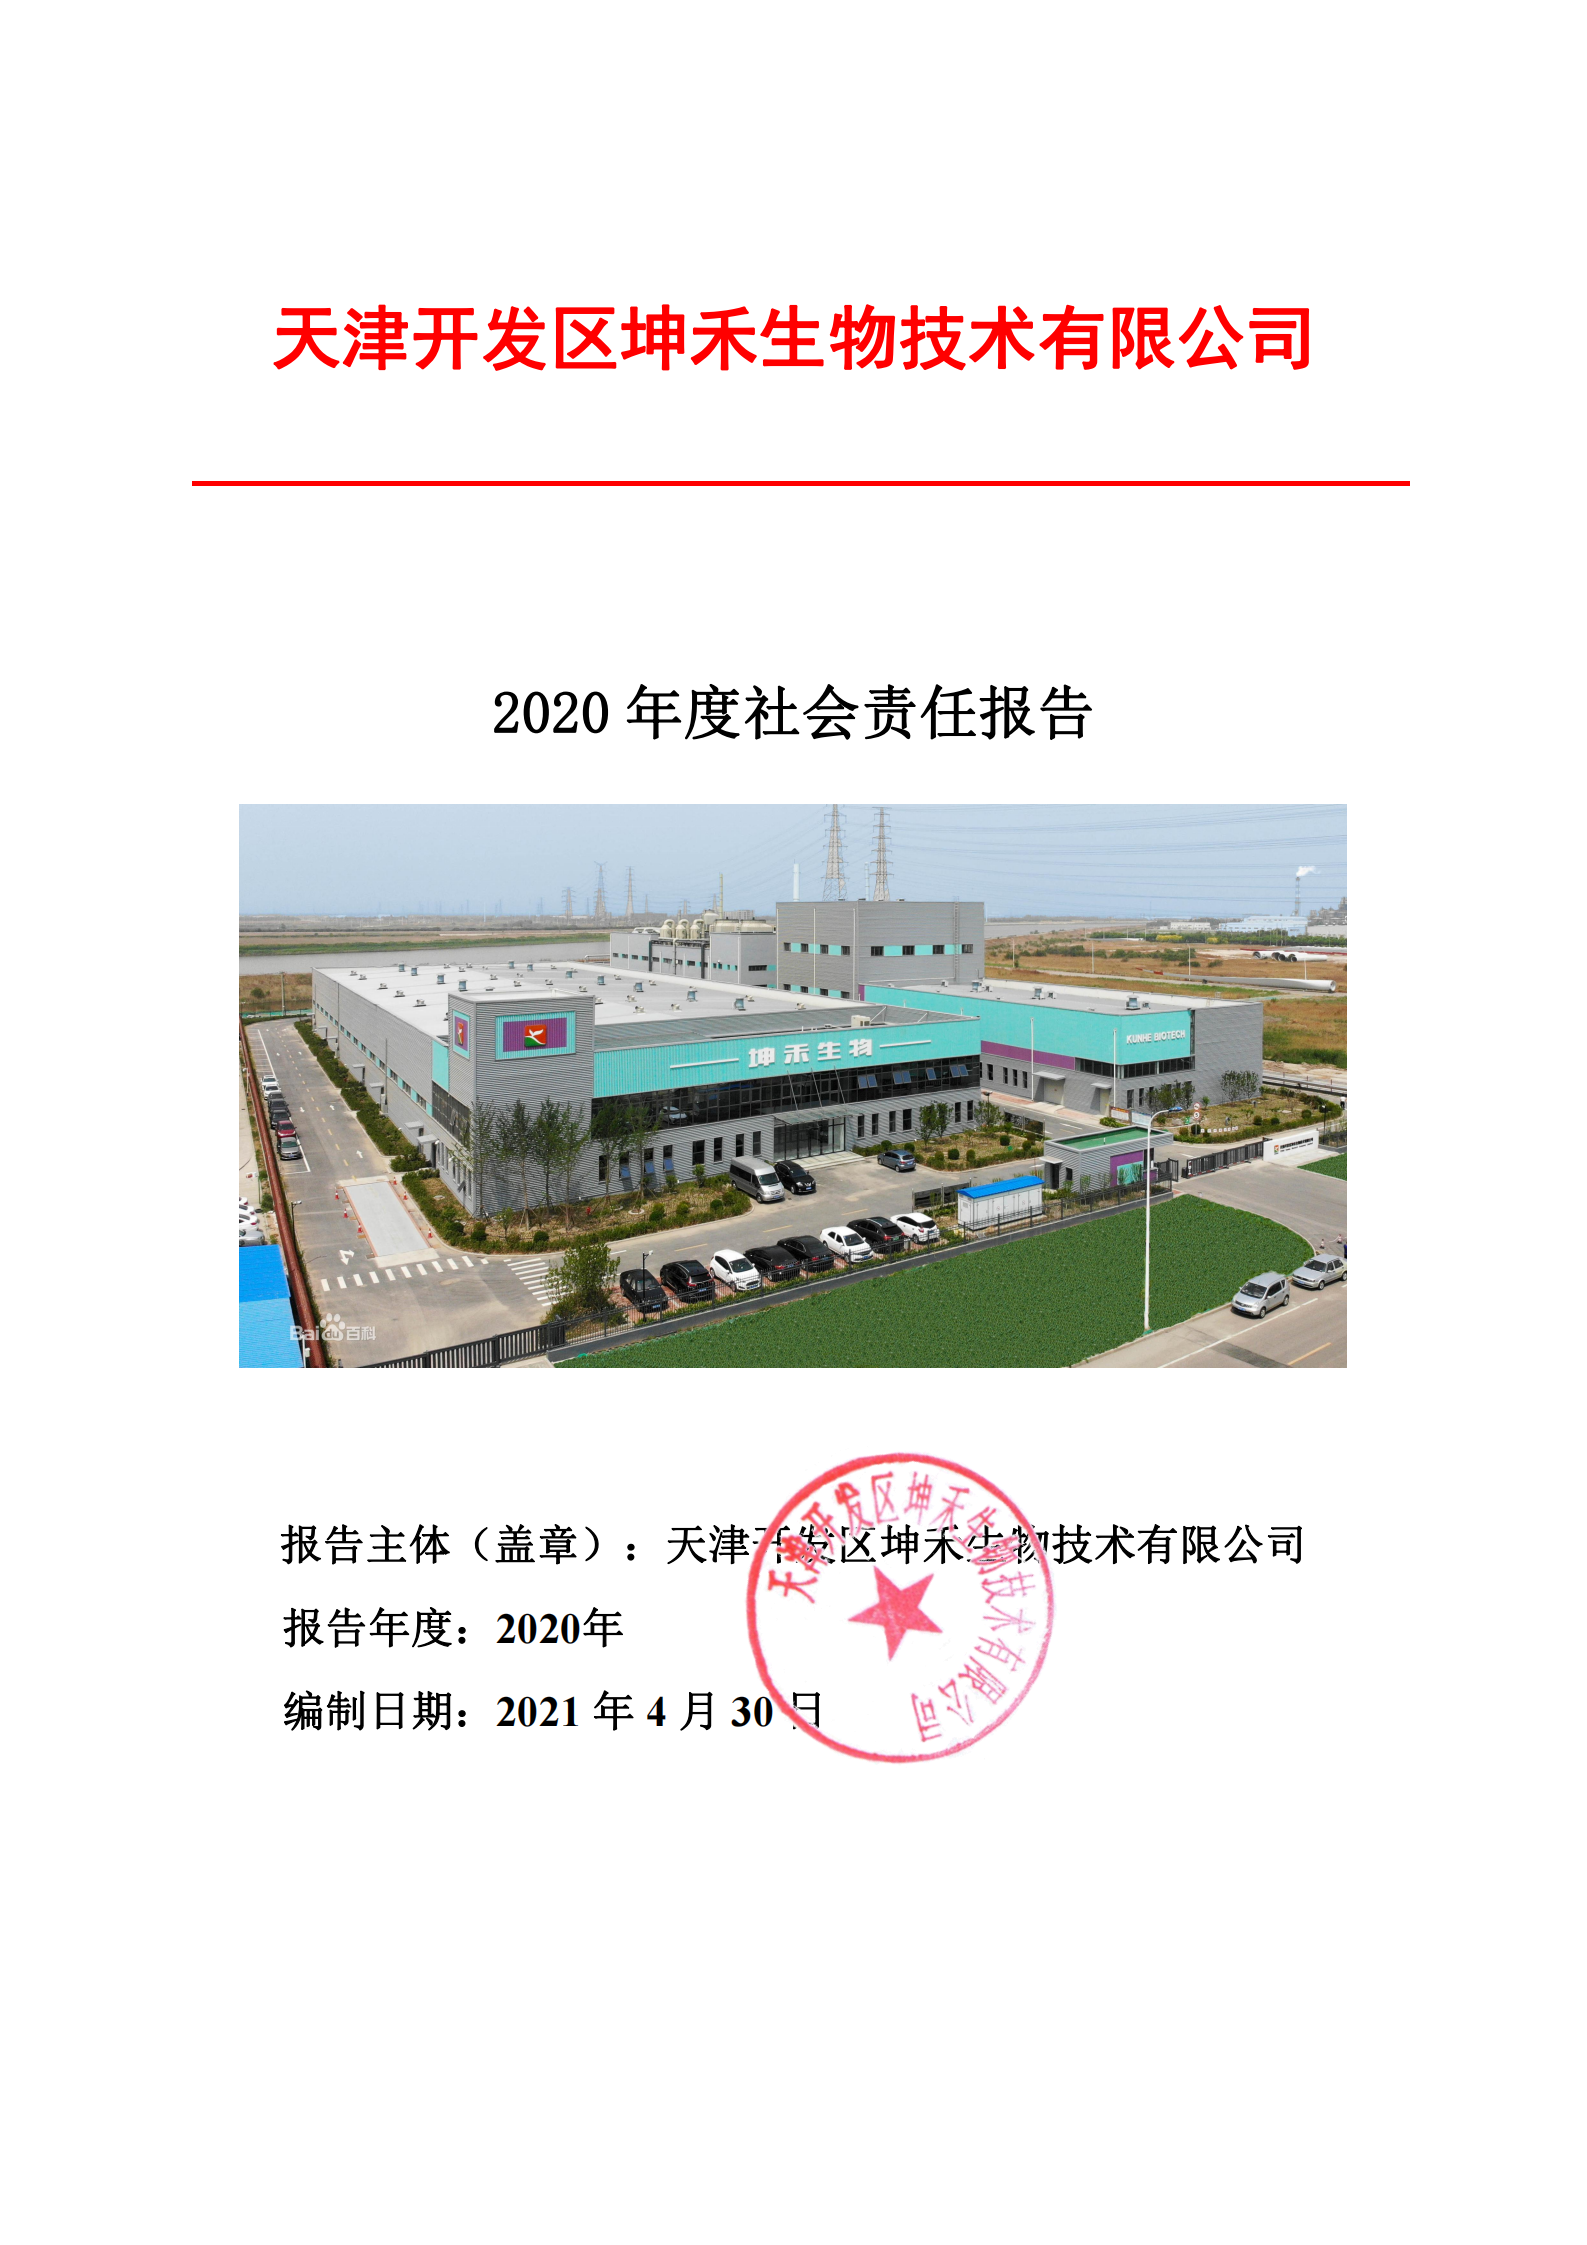 2020年企业社会责任报告--坤禾_00.png